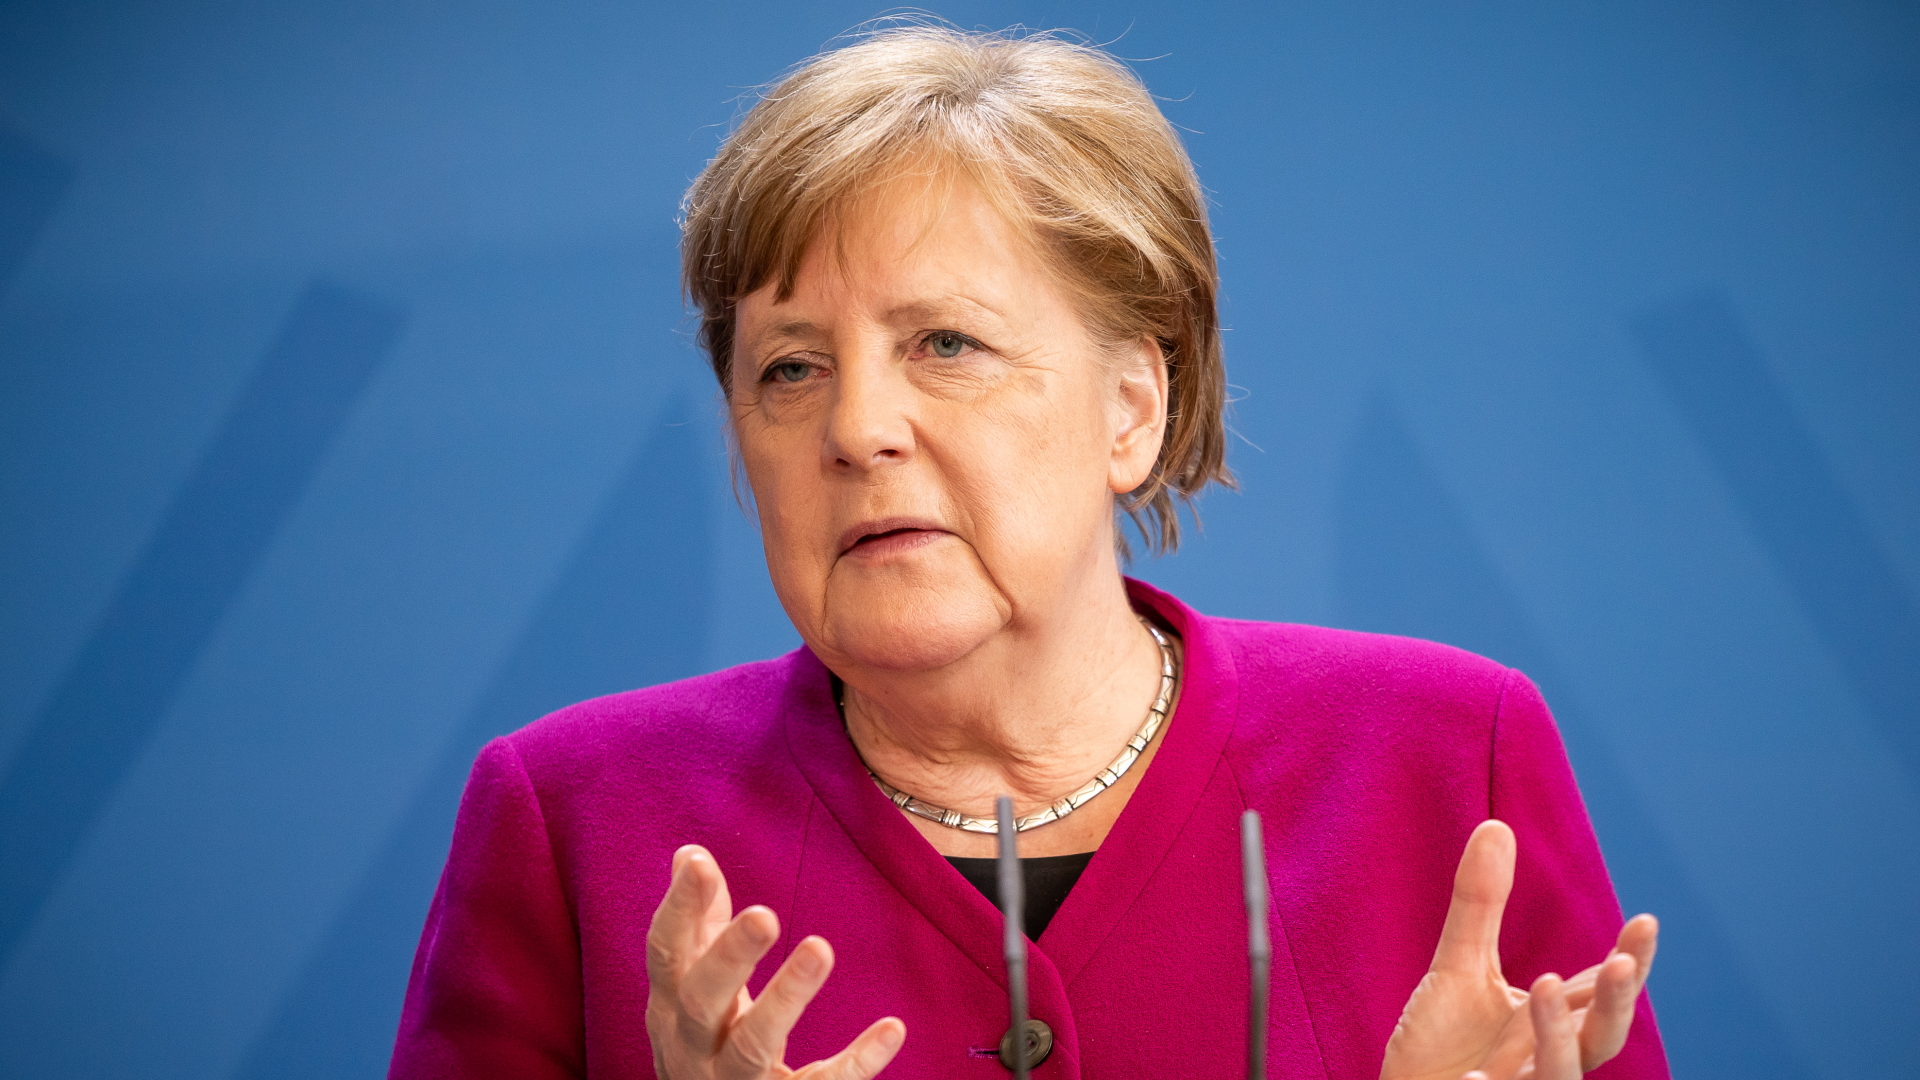 Bundeskanzlerin Angela Merkel bei einer Pressekonferenz | dpa